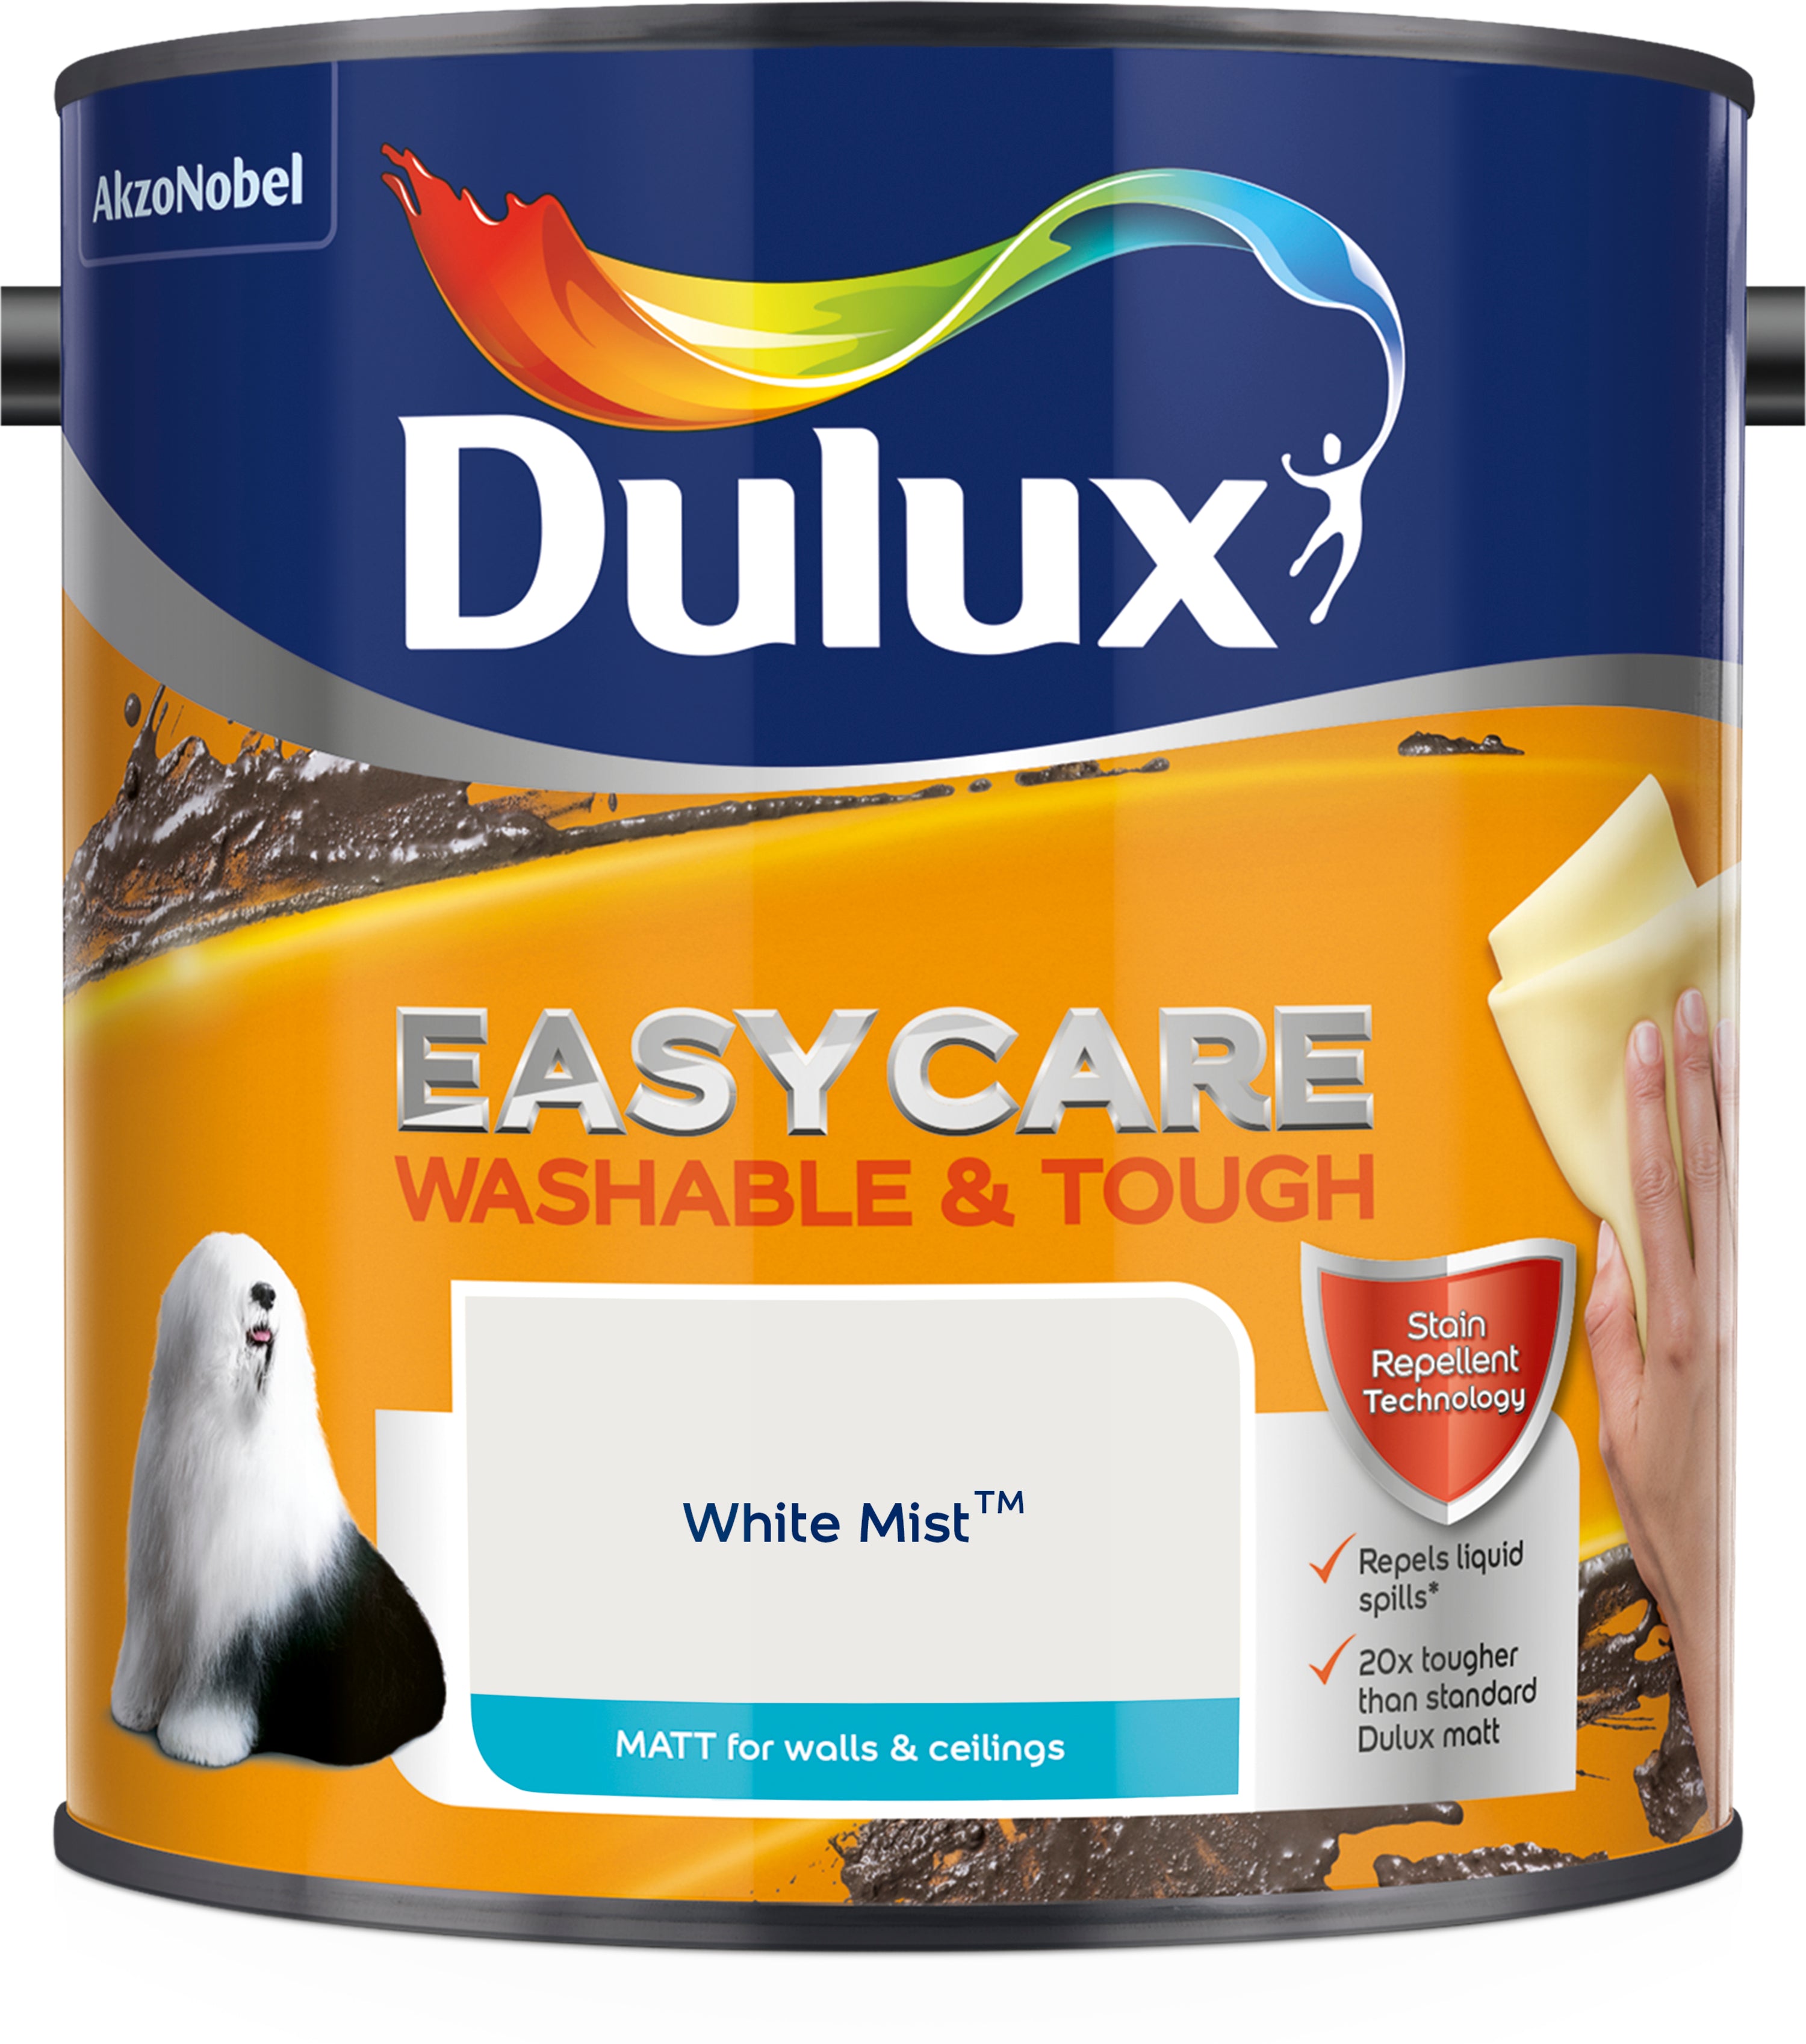 Dulux Easycare Washable & Tough Matt White Mist 2.5L